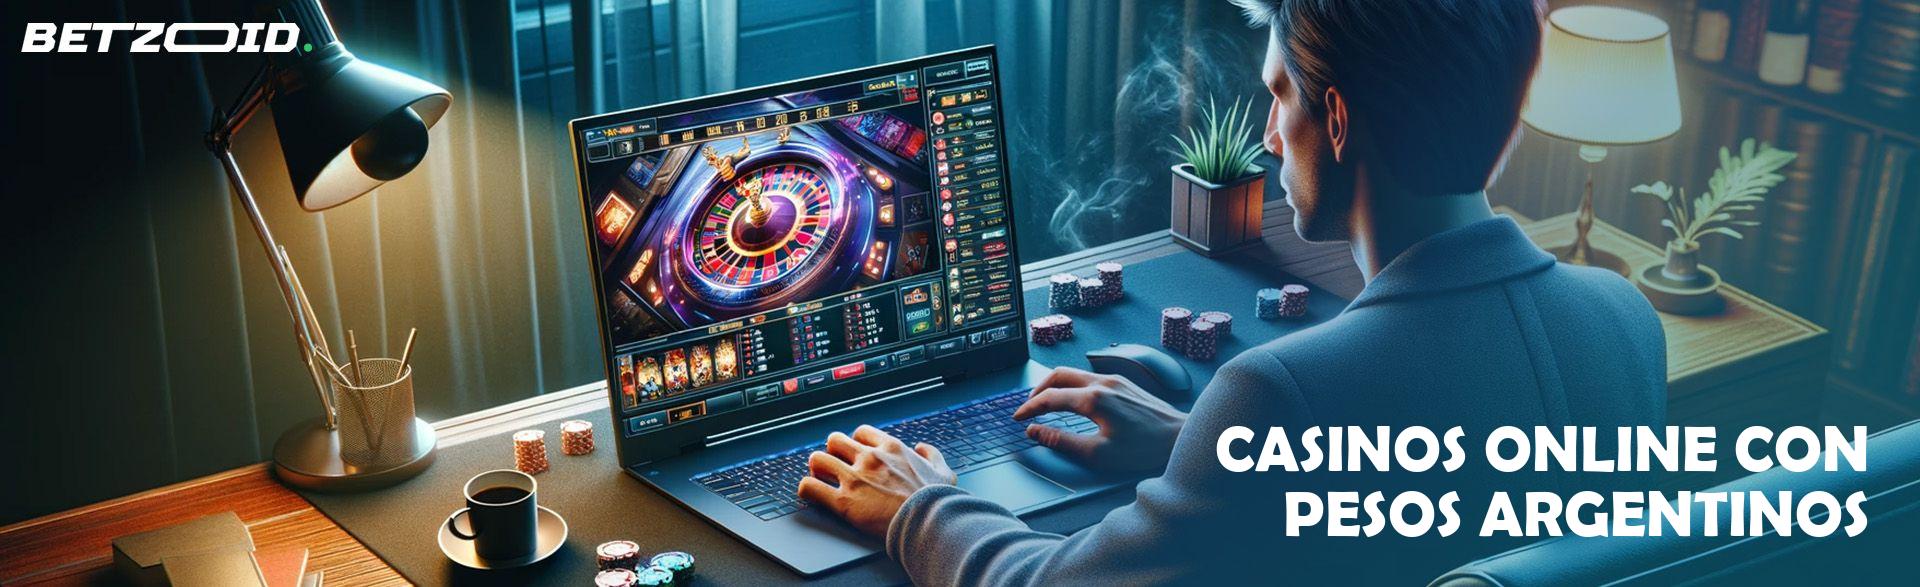 Casinos Online con Pesos Argentinos.